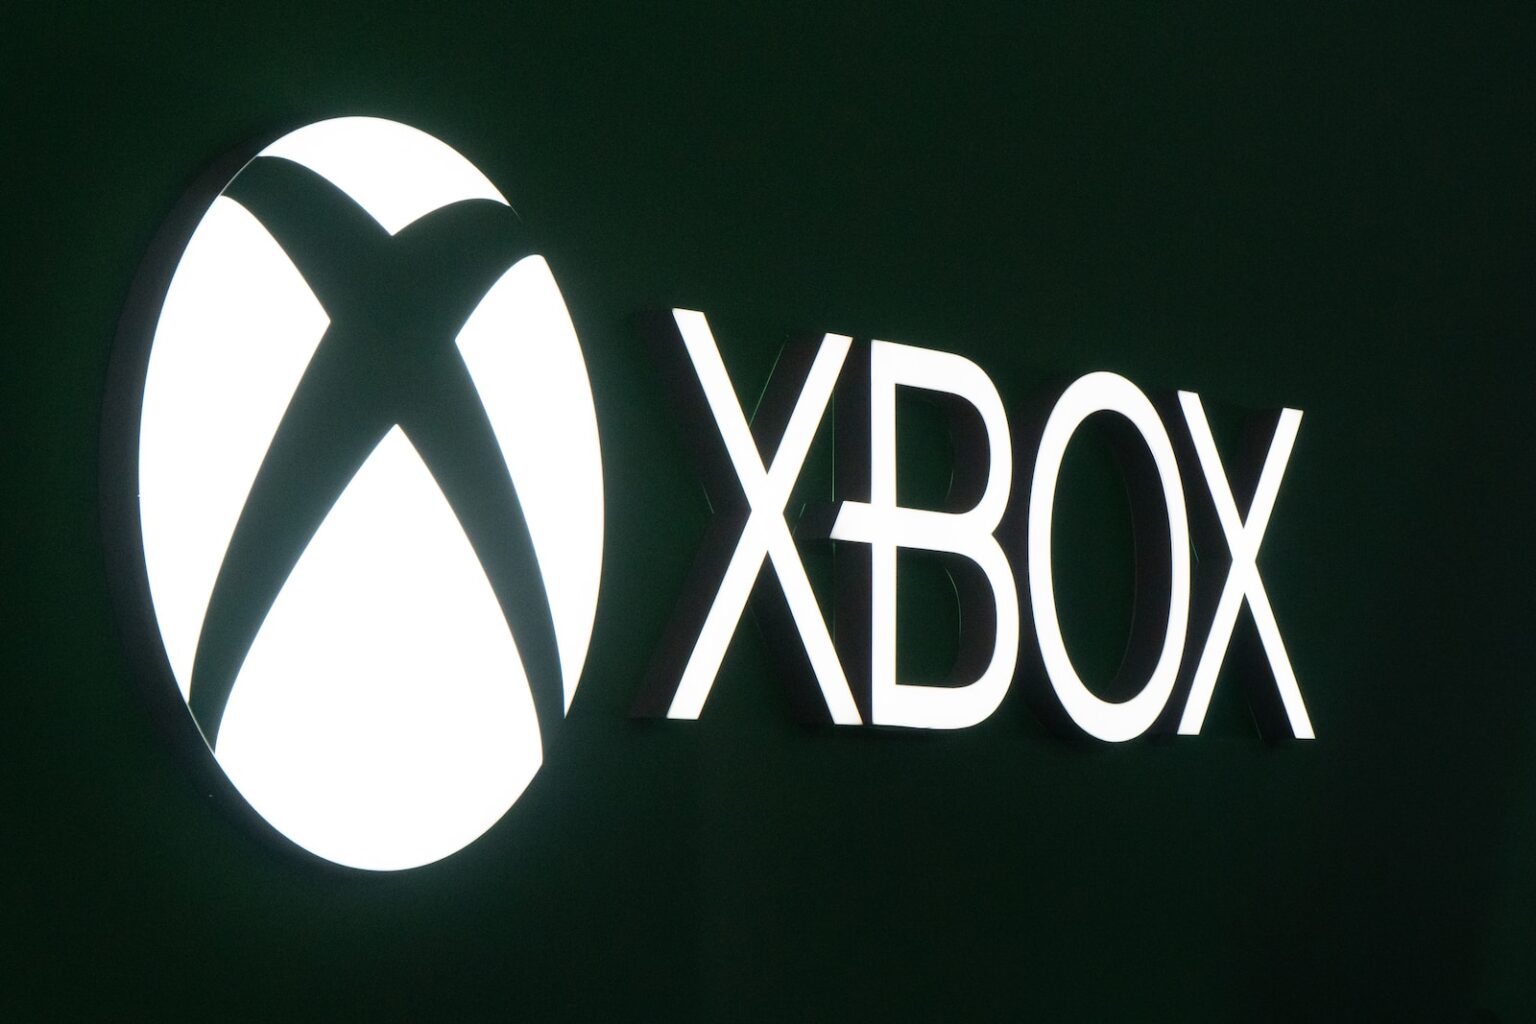 Xbox logotype